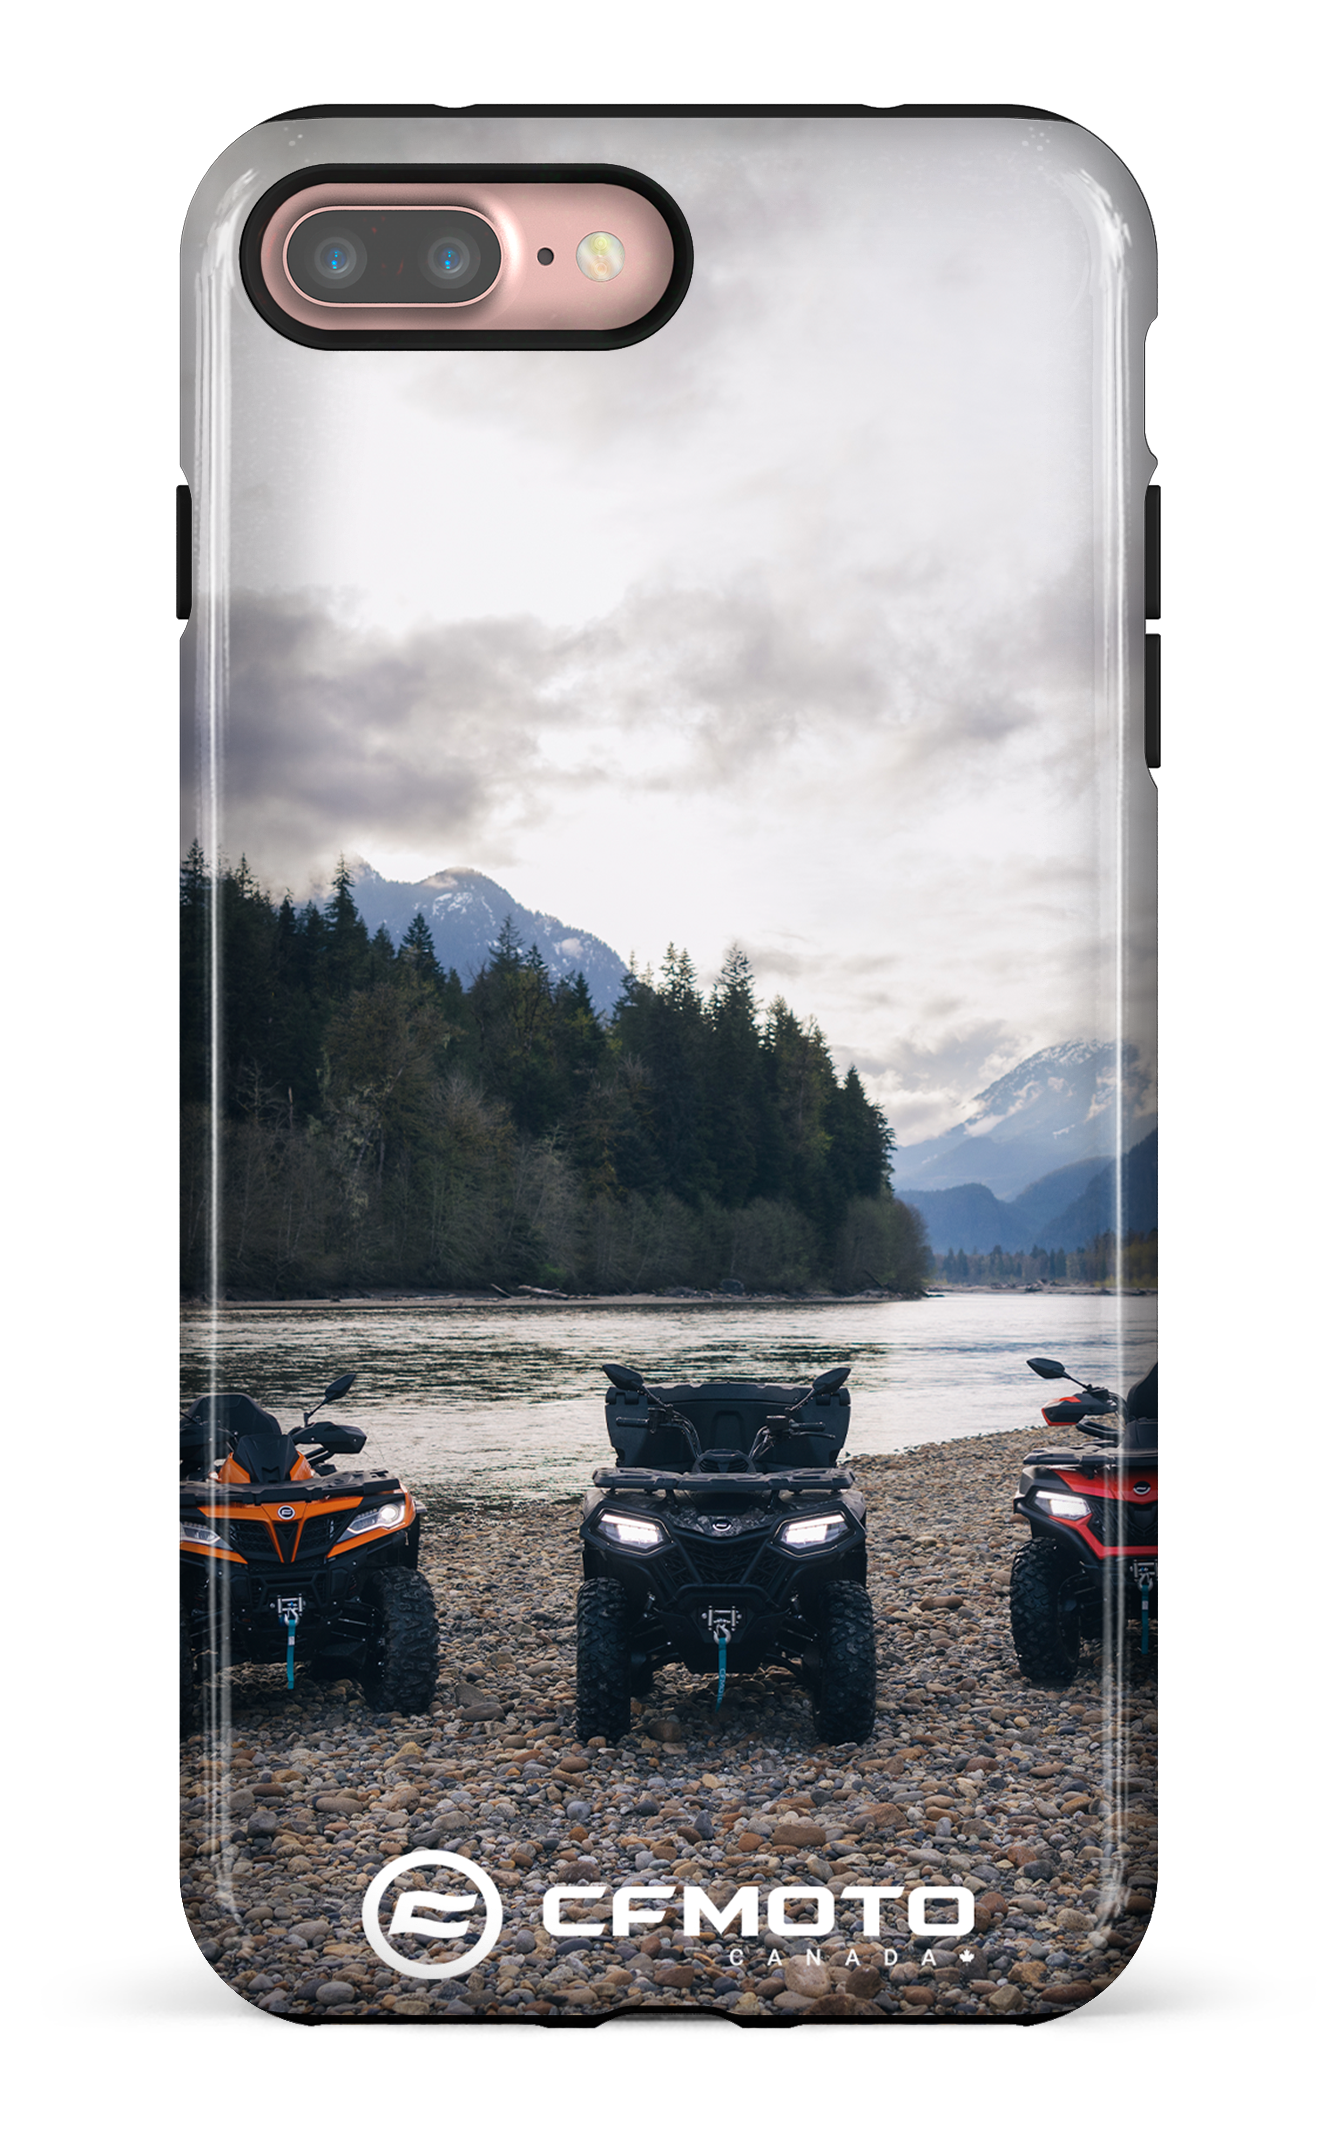 CF Moto 2 - iPhone 7 Plus